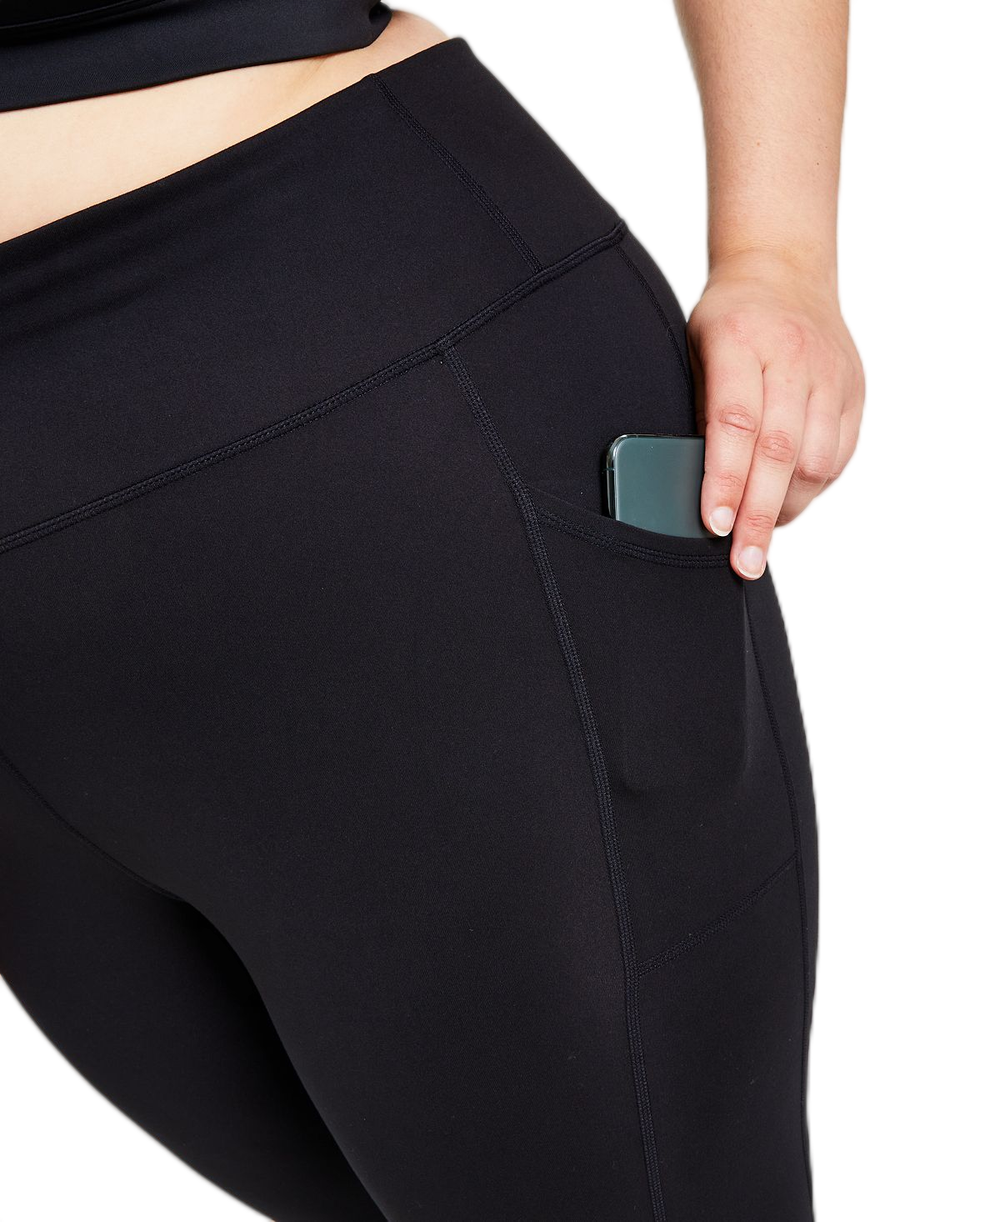 Sleek Comfort High-Waisted Yoga Pants